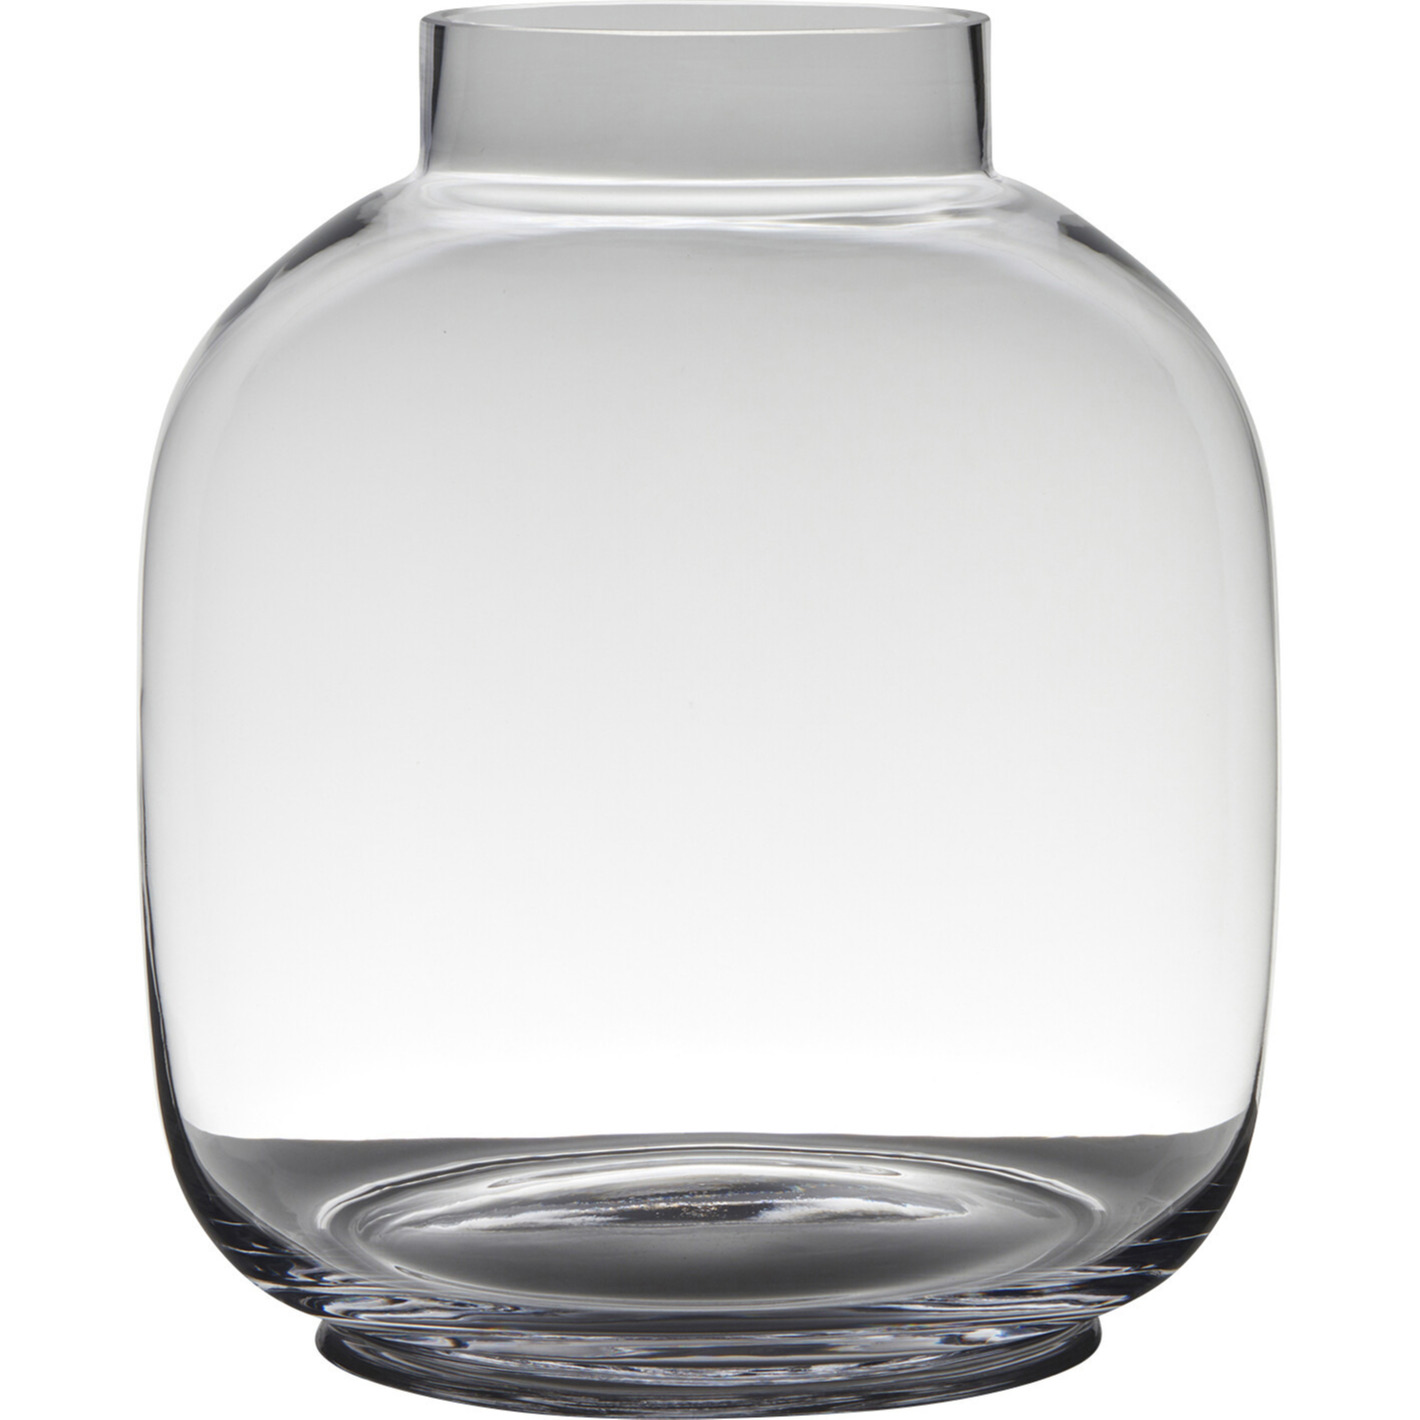 Merkloos Transparante luxe grote vaas/vazen van glas 29 x 26 cm -